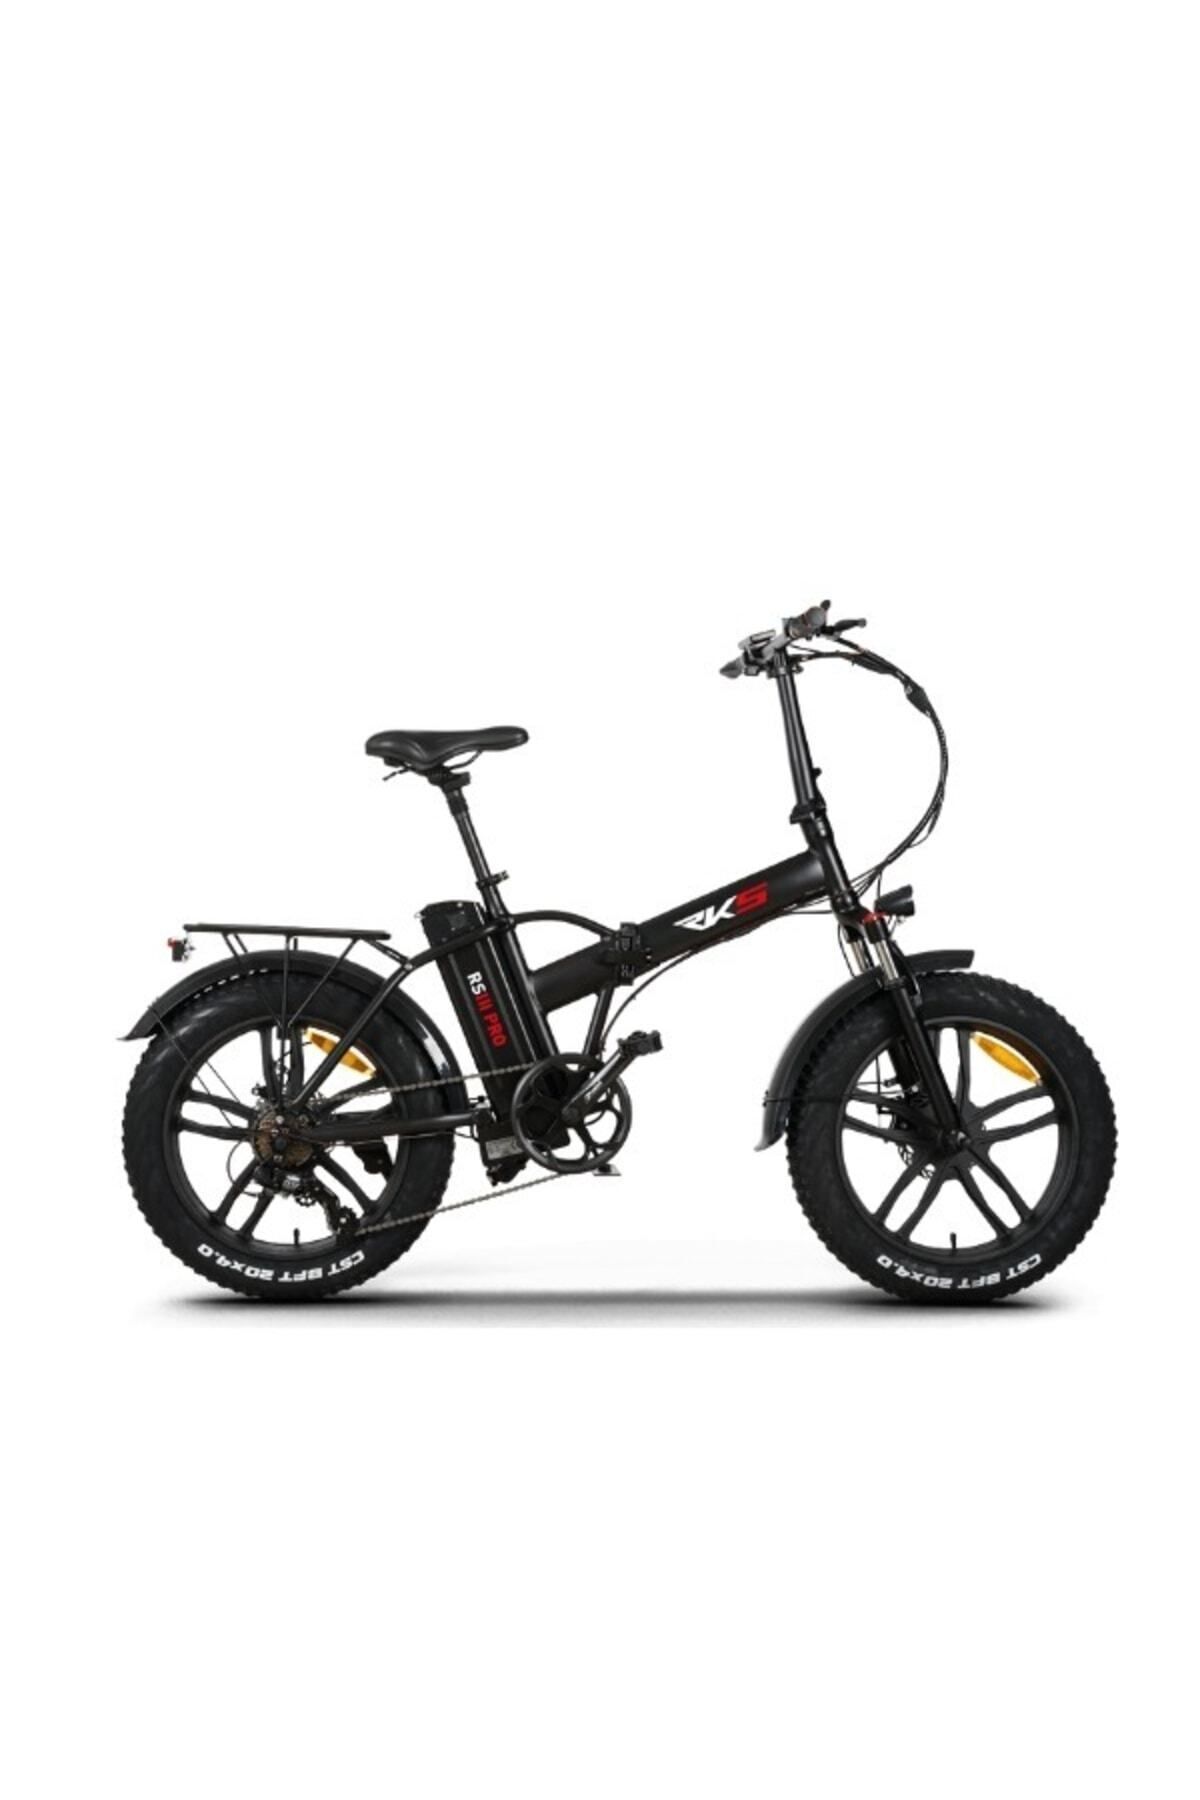 RKS Rsııı Pro - Rs3 Pro Elektrikli Bisiklet - Siyah